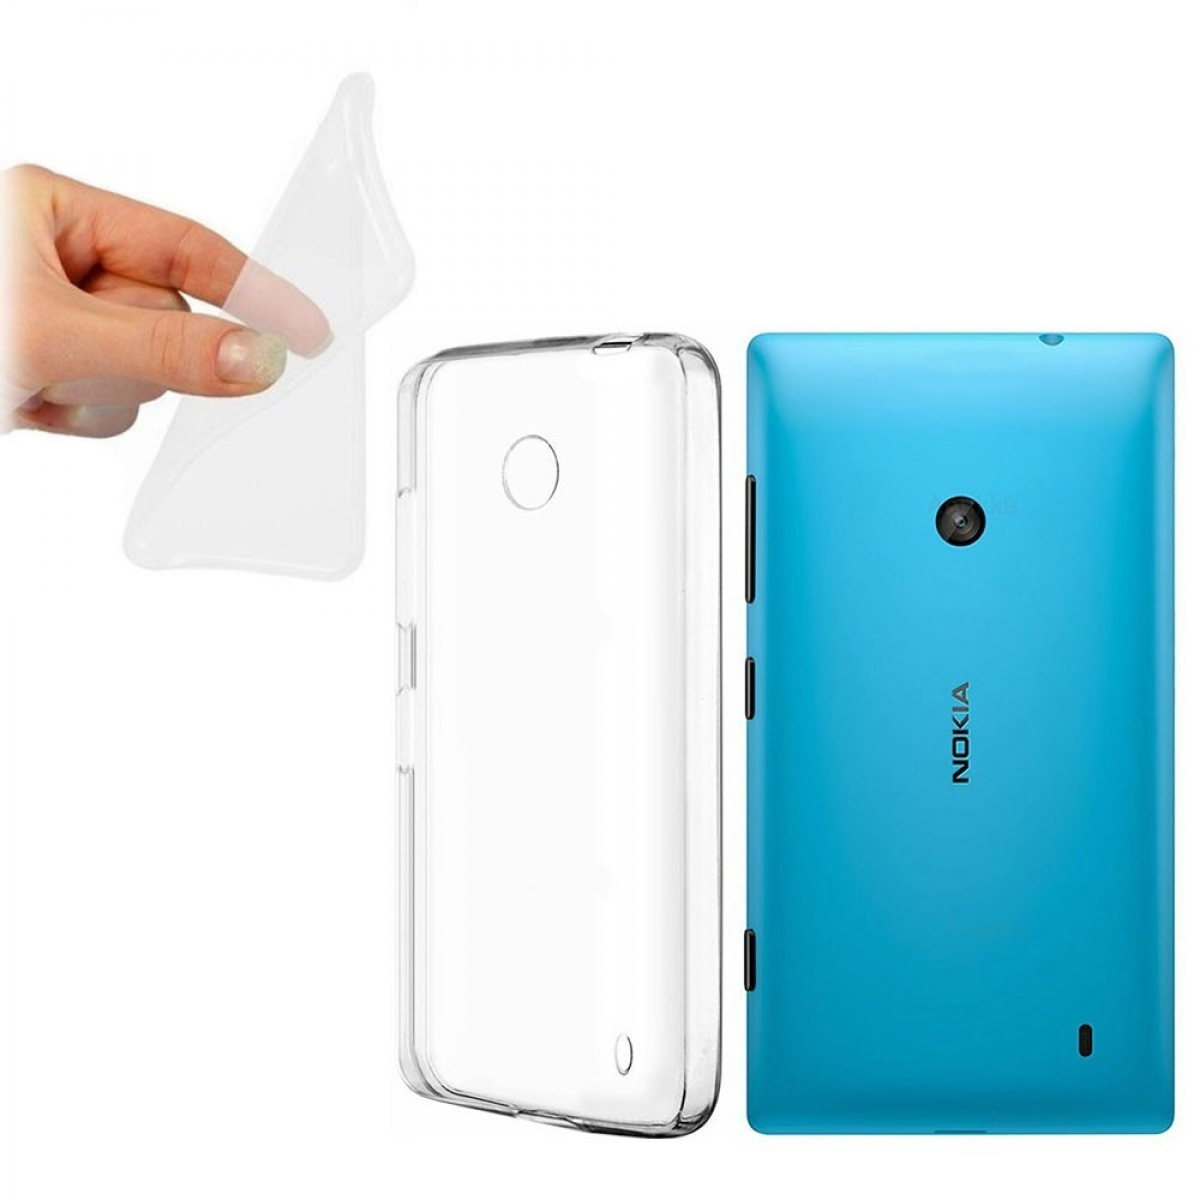 Nokia, CA4, Lumia Backcover, 520, Transparent CASEONLINE